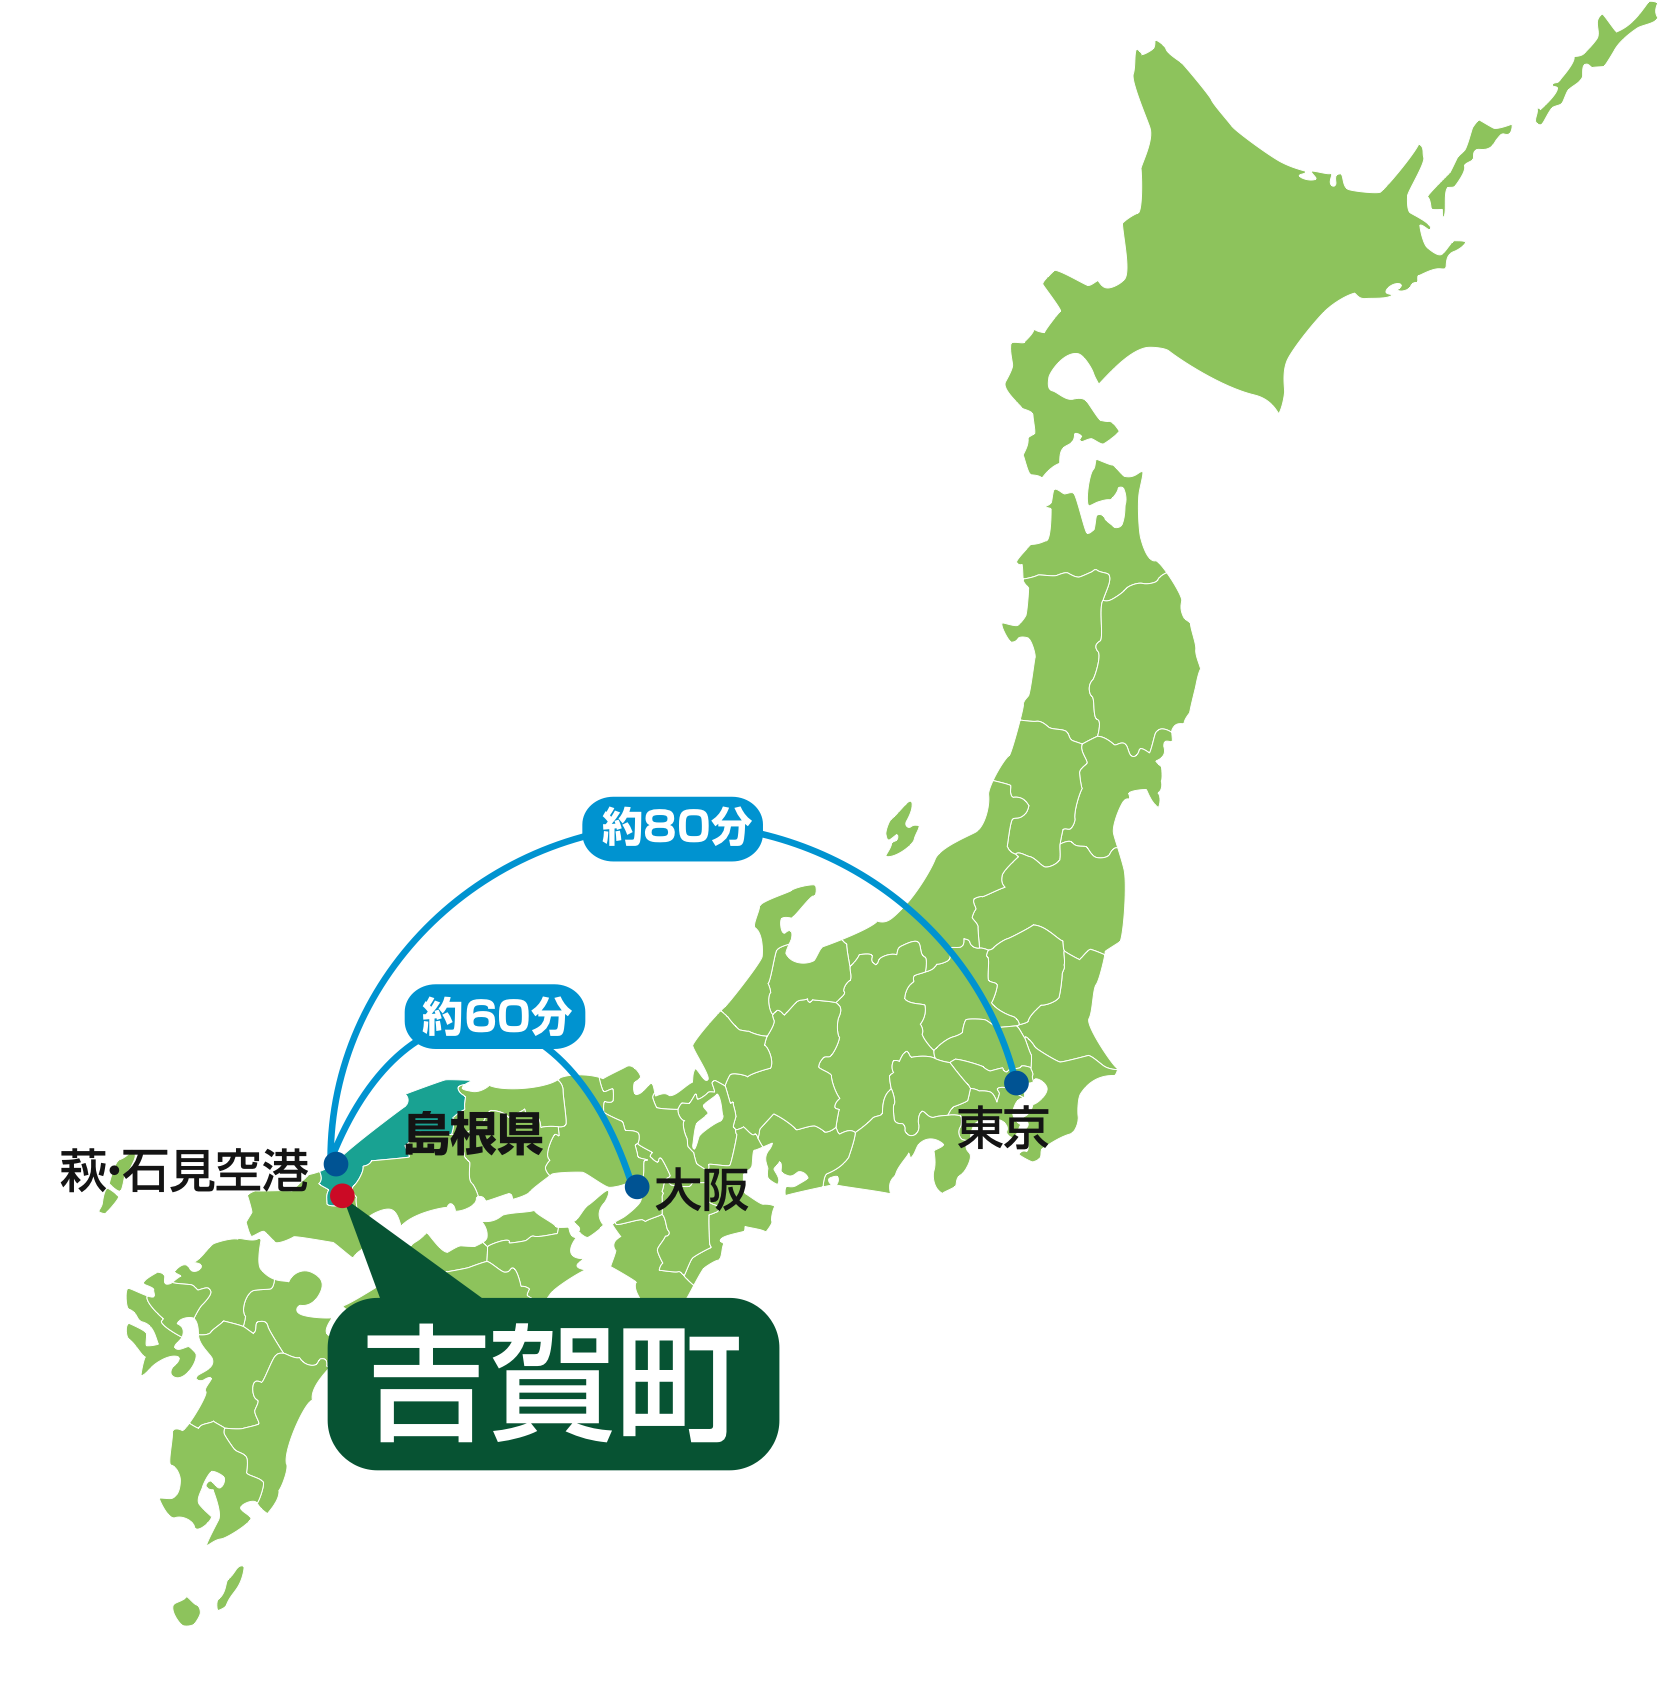 東京から萩・石見空港まで80分、大阪から萩・石見空港まで60分